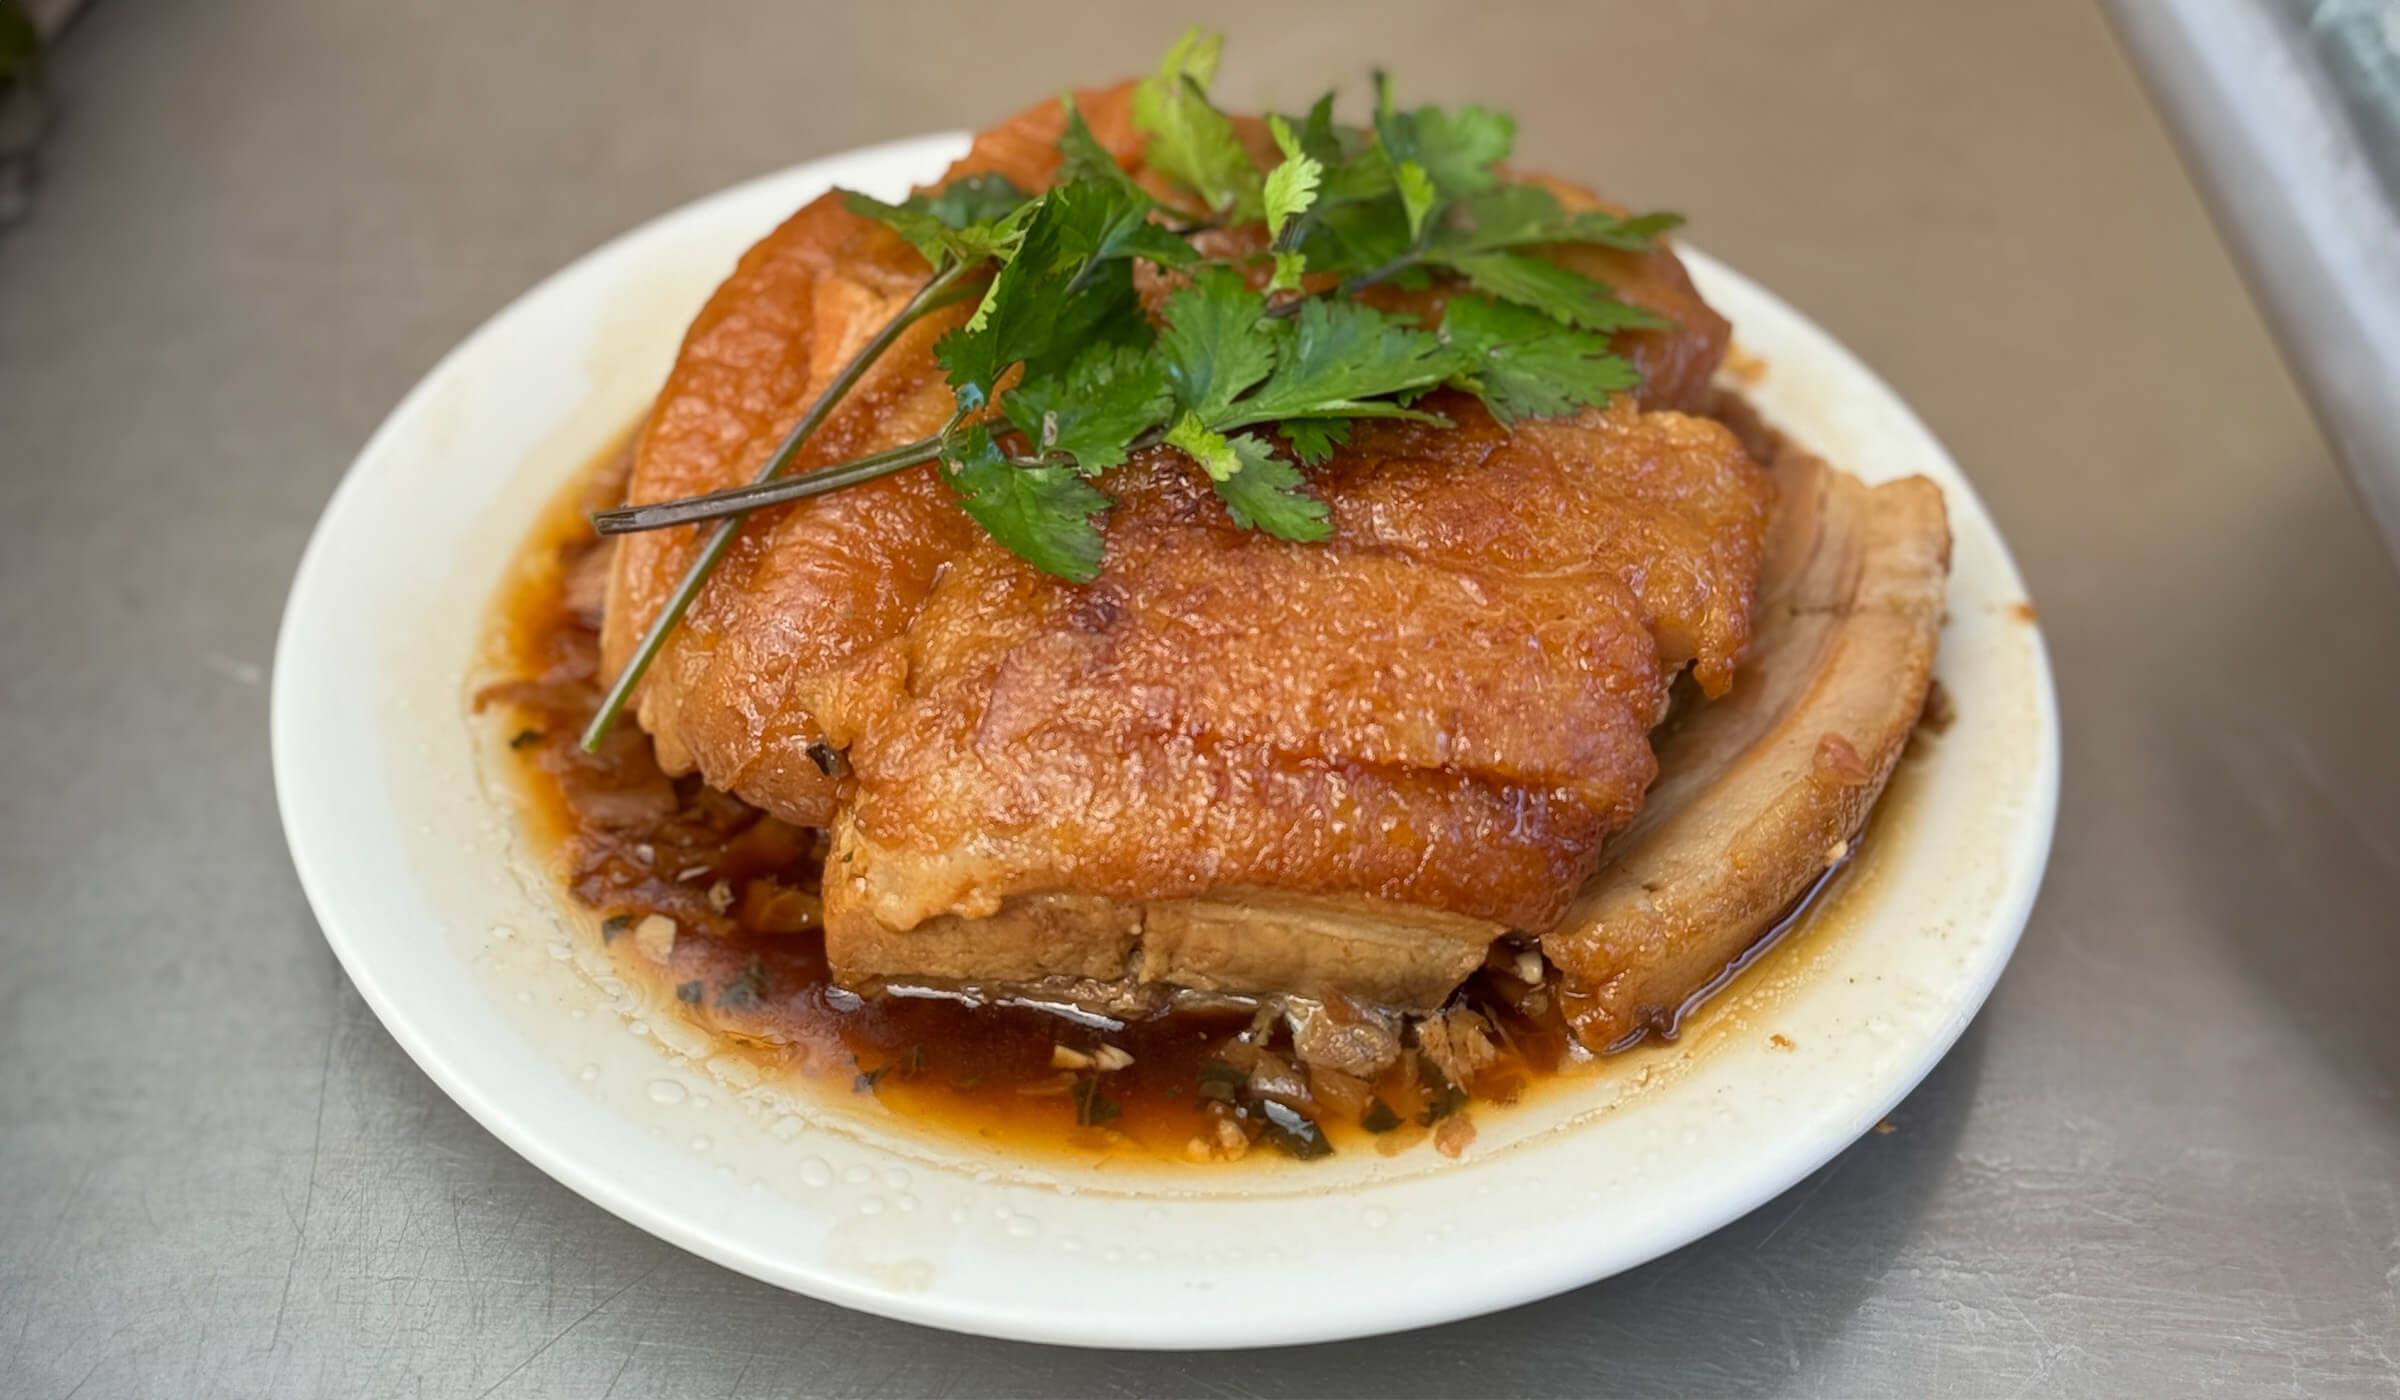 mei cai kou rou (梅菜扣肉), tender pork belly with preserved mustard greens